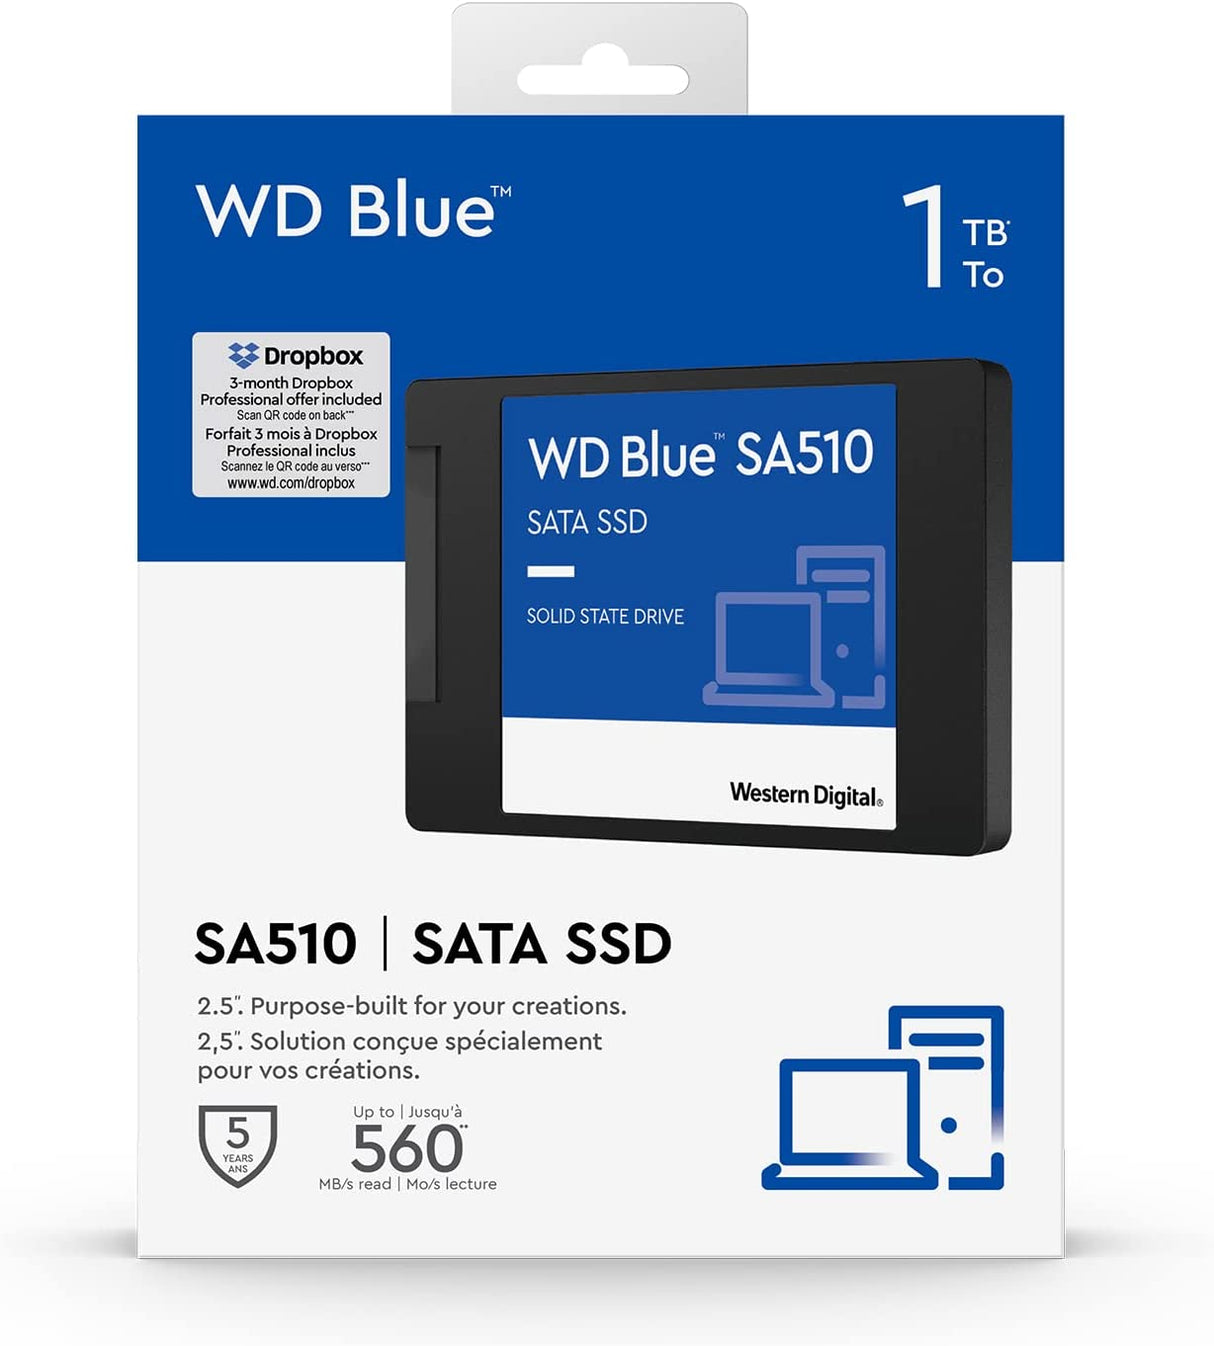 Western Digital 500GB WD Blue SA510 SATA Internal Solid State Drive SSD -  SATA III 6 Gb/s, 2.5/7mm, Up to 560 MB/s - WDS500G3B0A